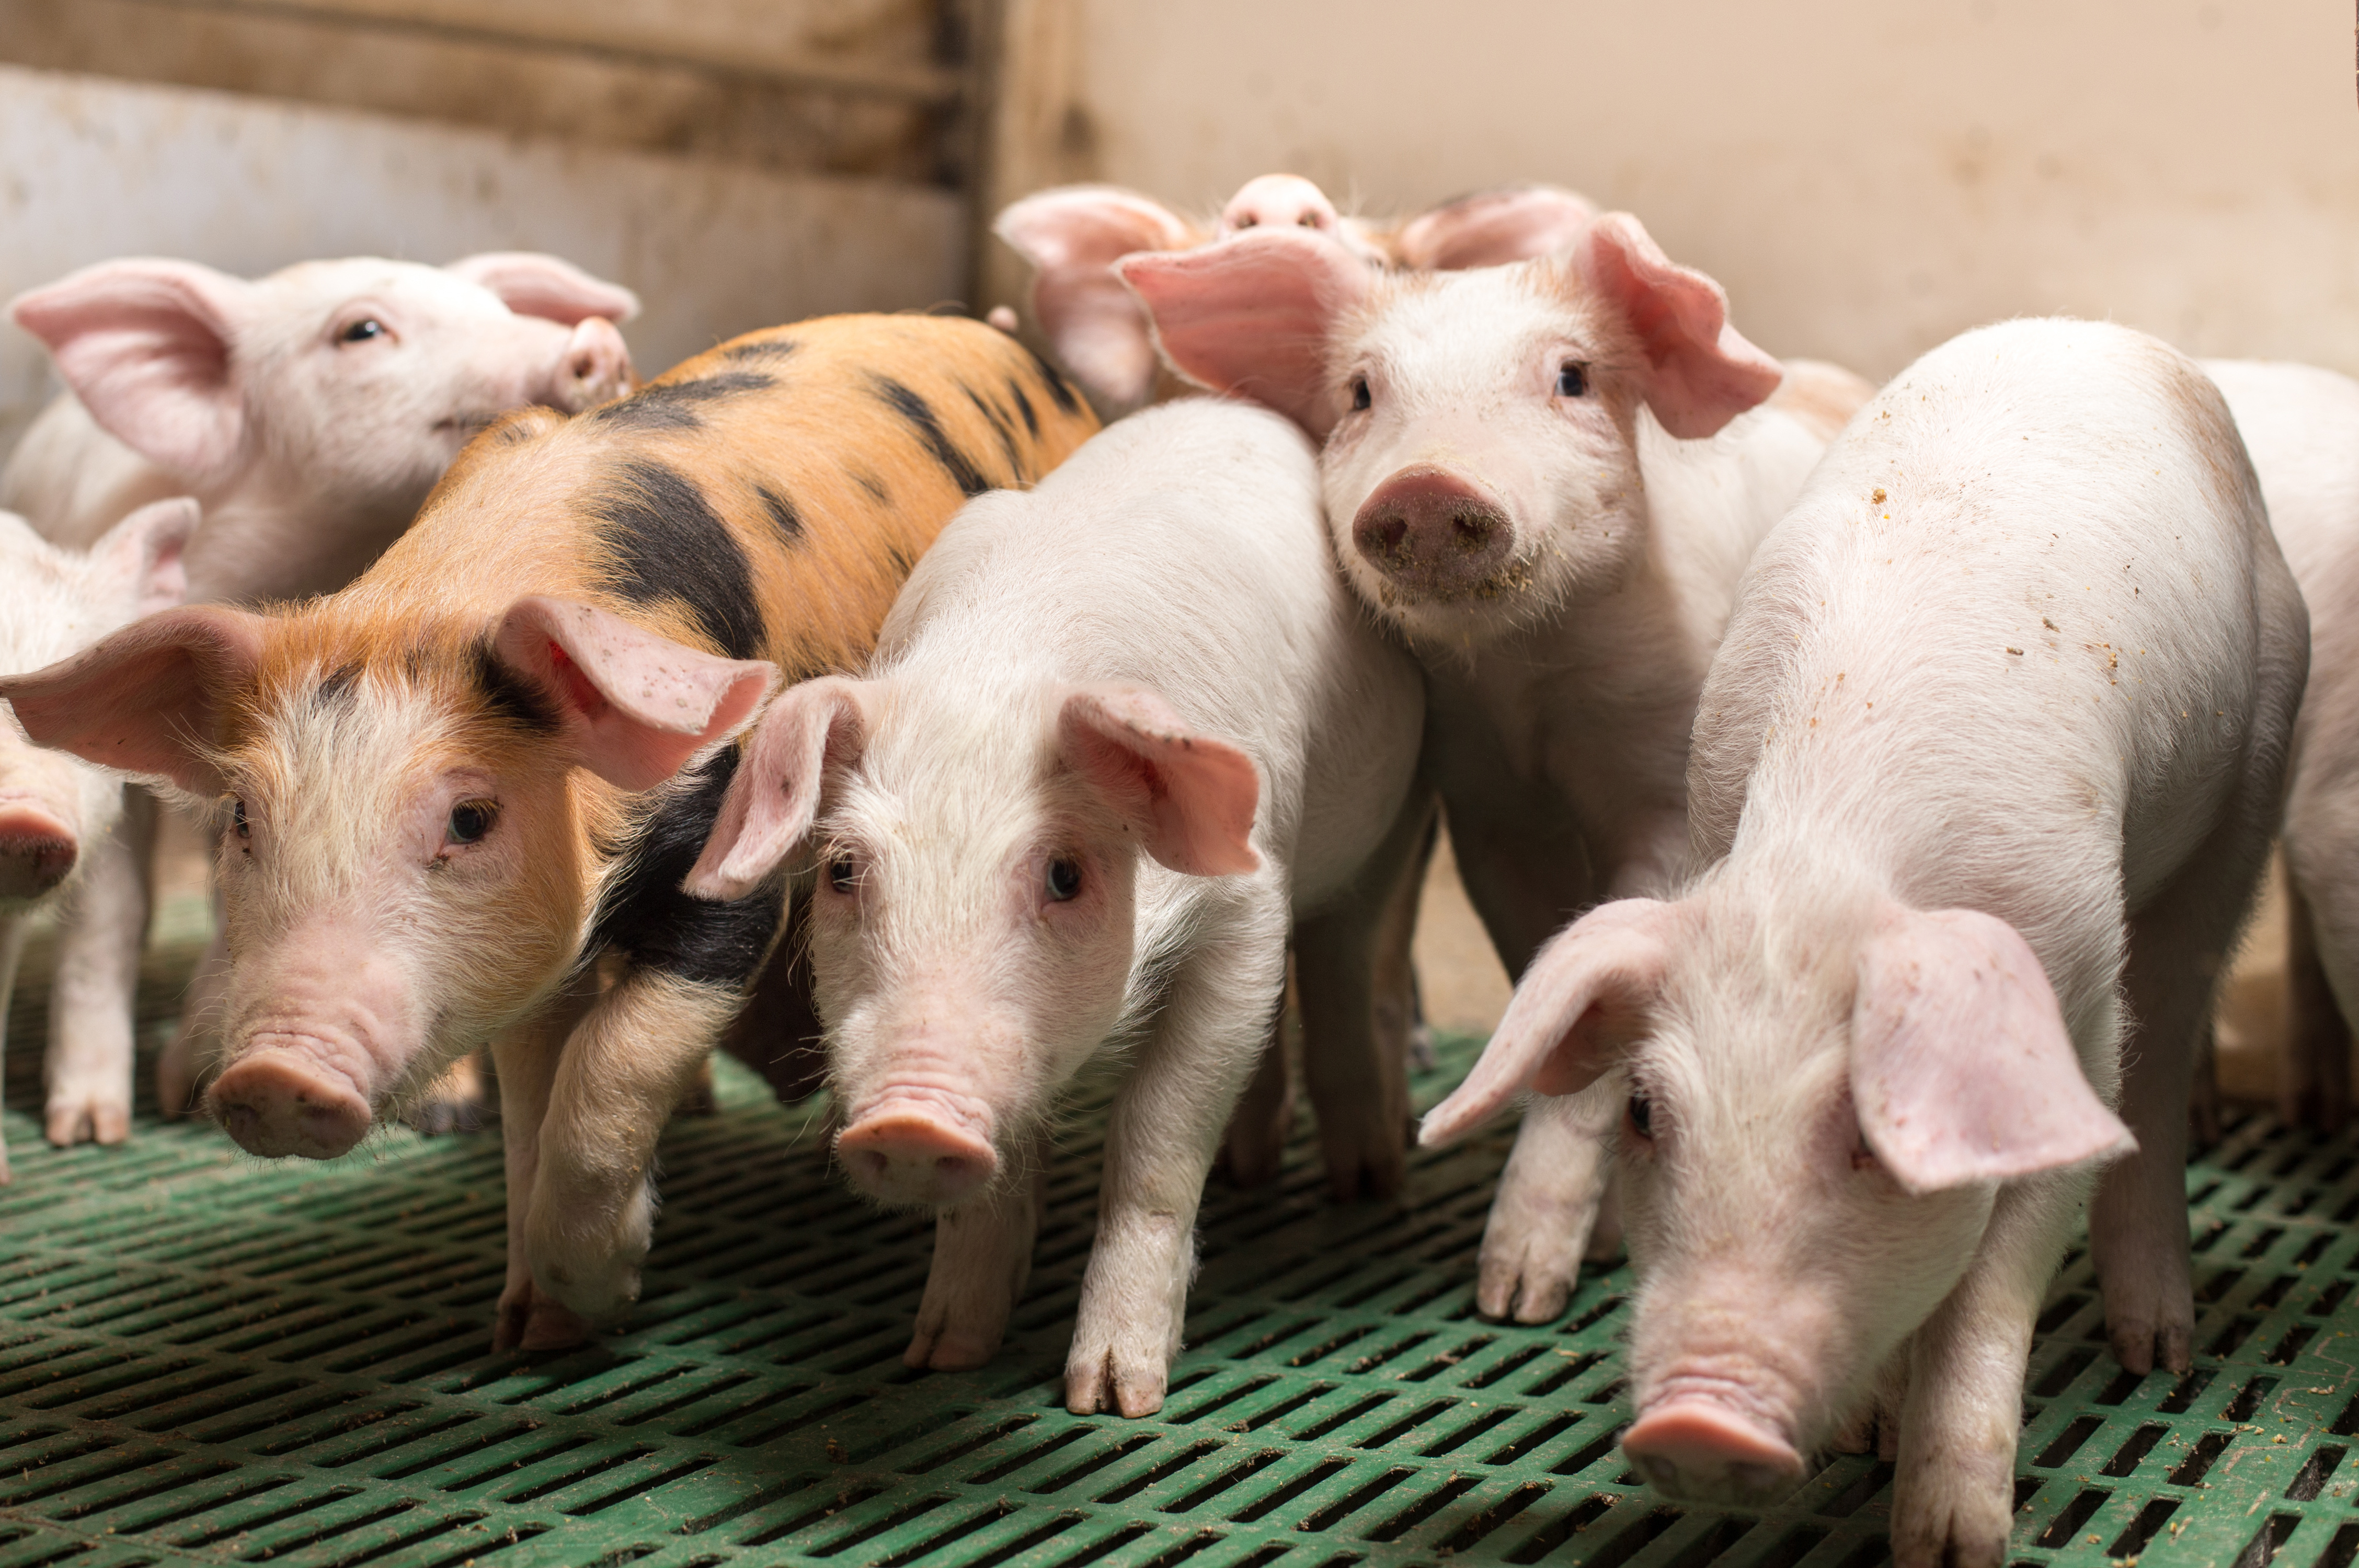 piglets in a commercial indoor herd